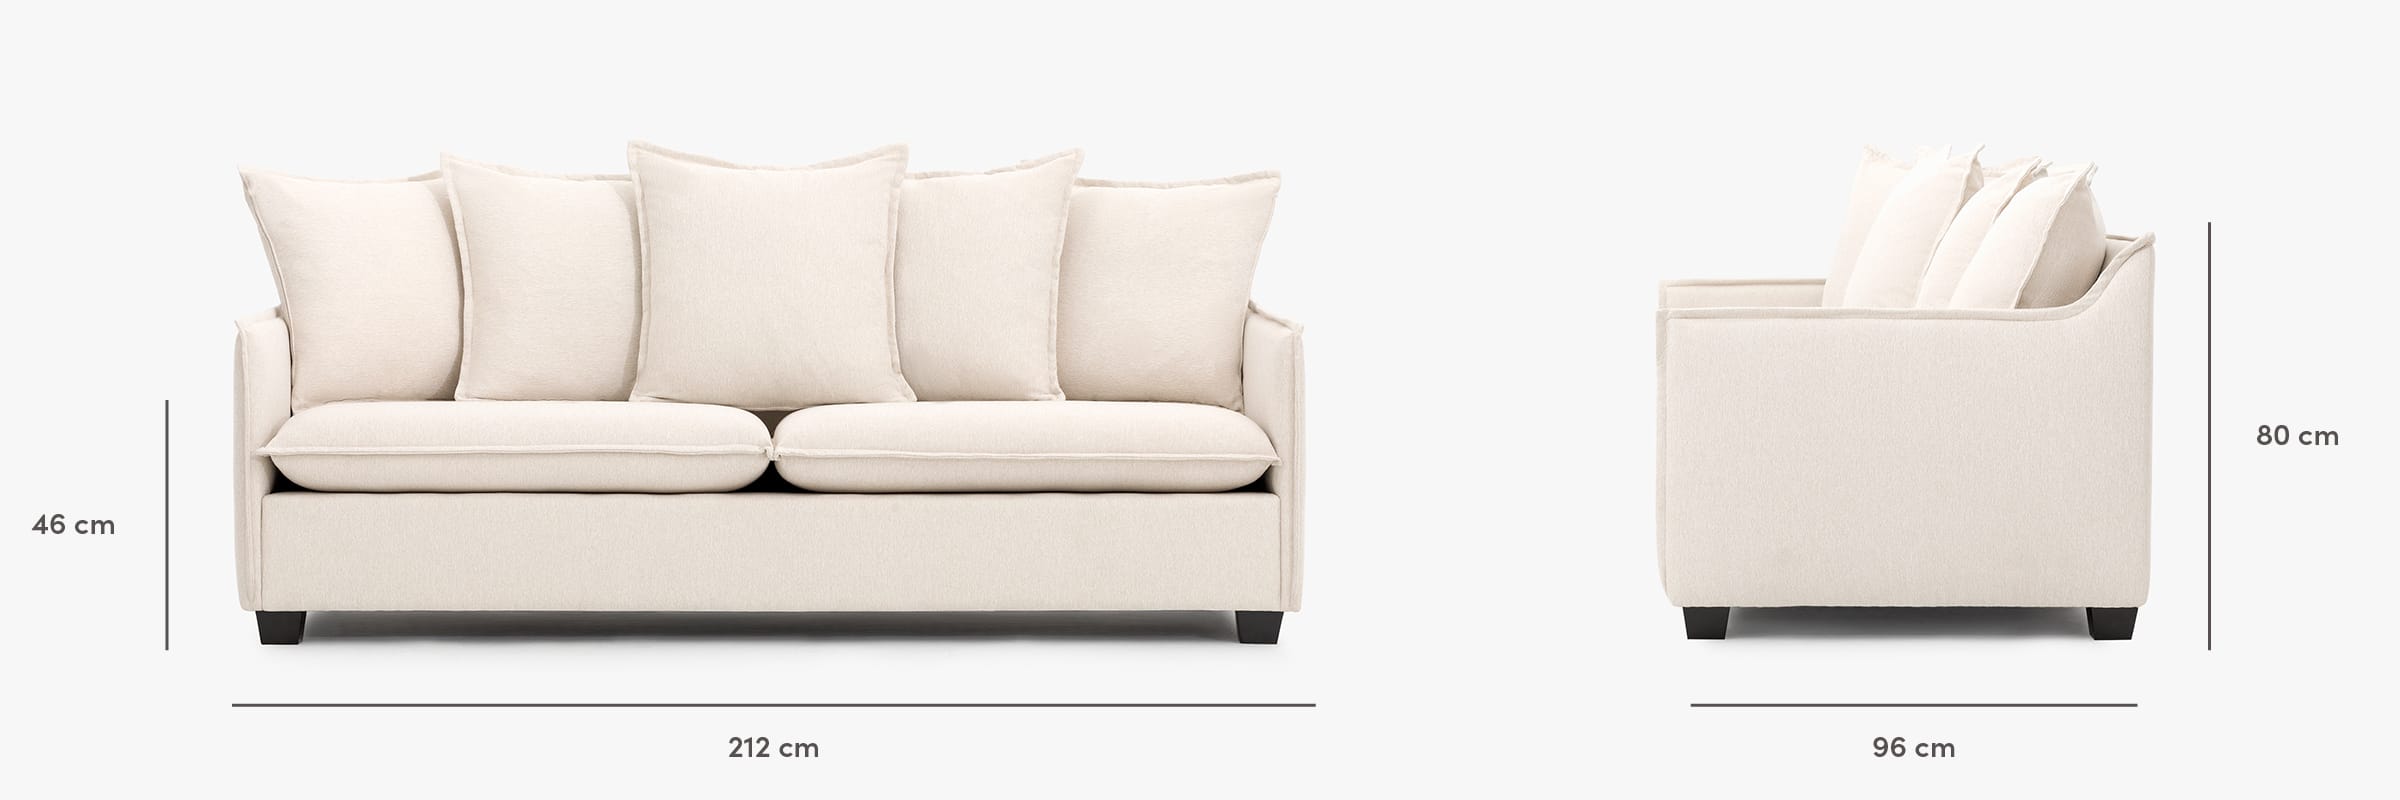 Miami sofa dimensions